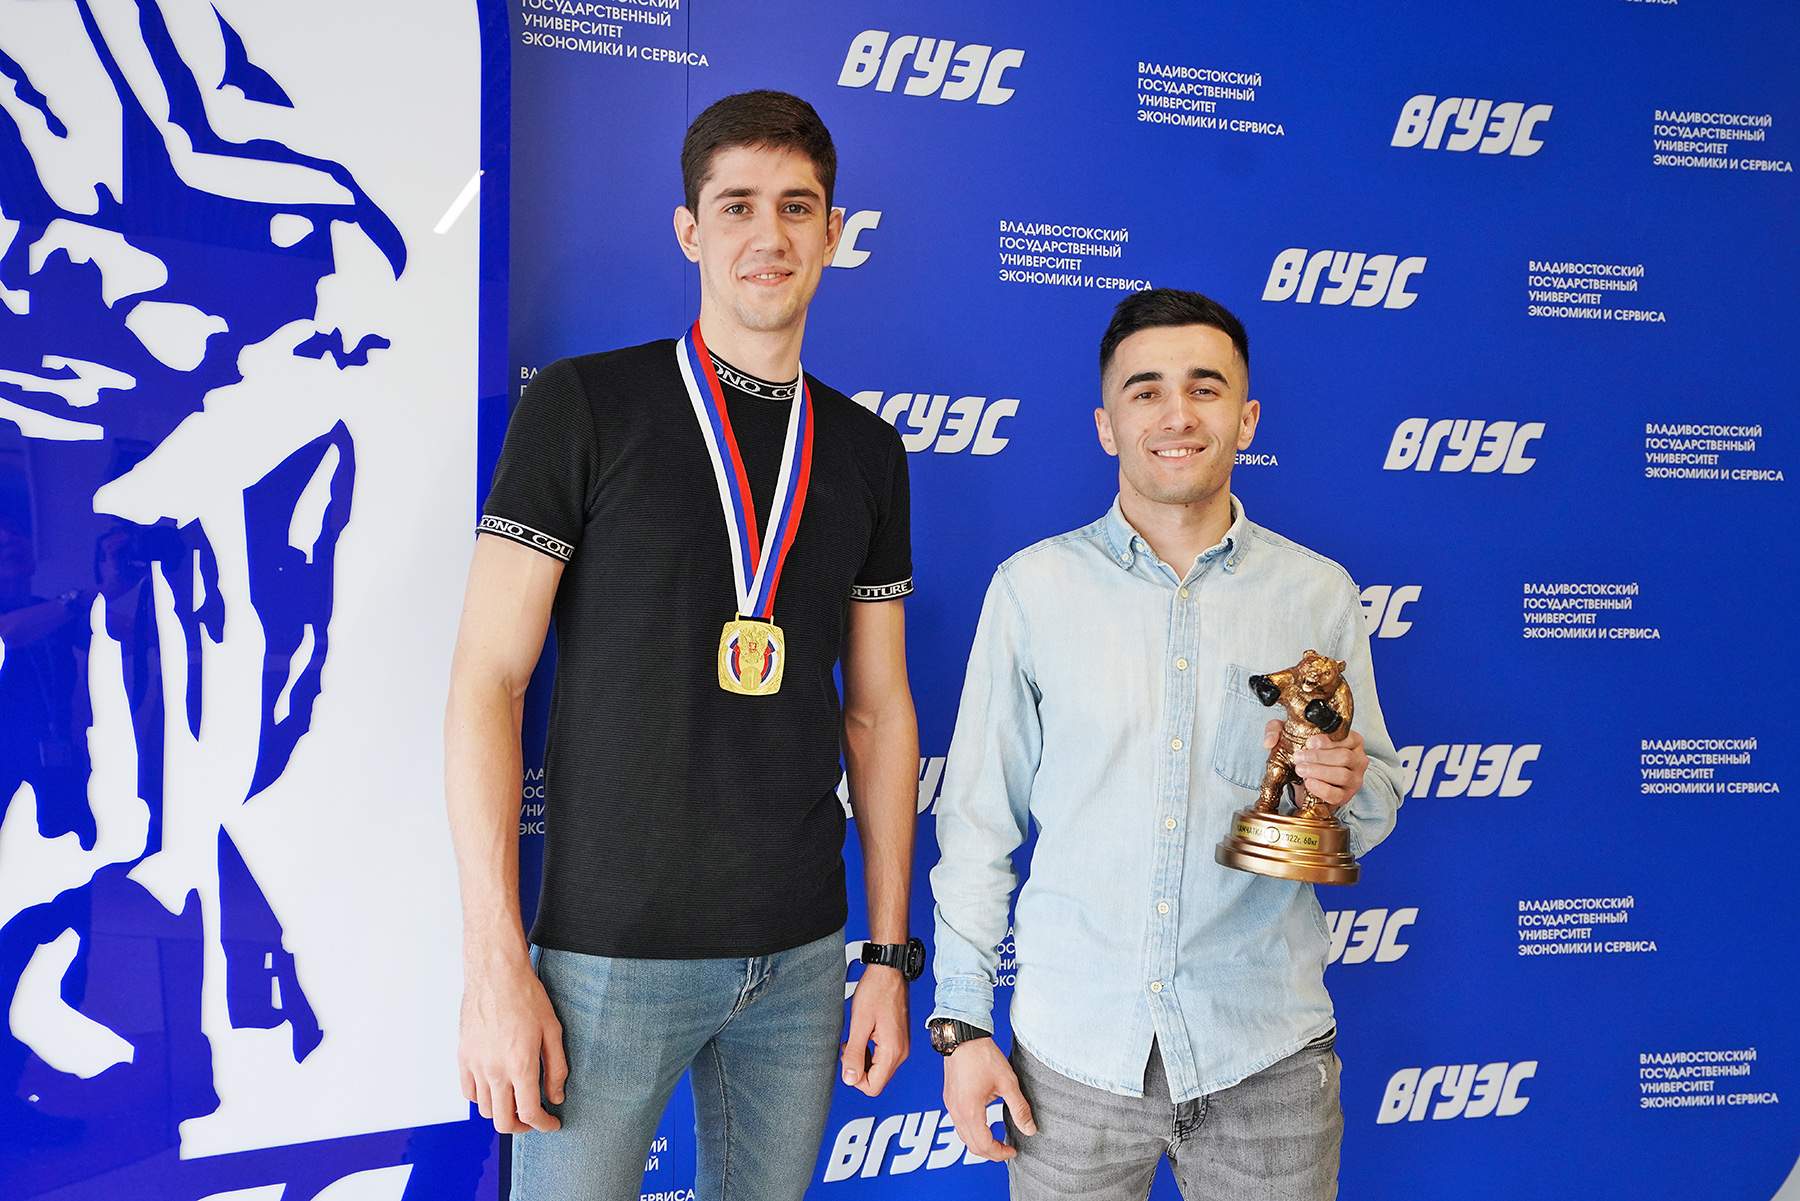 Сборная ВГУЭС завоевала медали на Межрегиональном турнире по боксу, посвящённом памяти тренеров и боксёров Камчатки